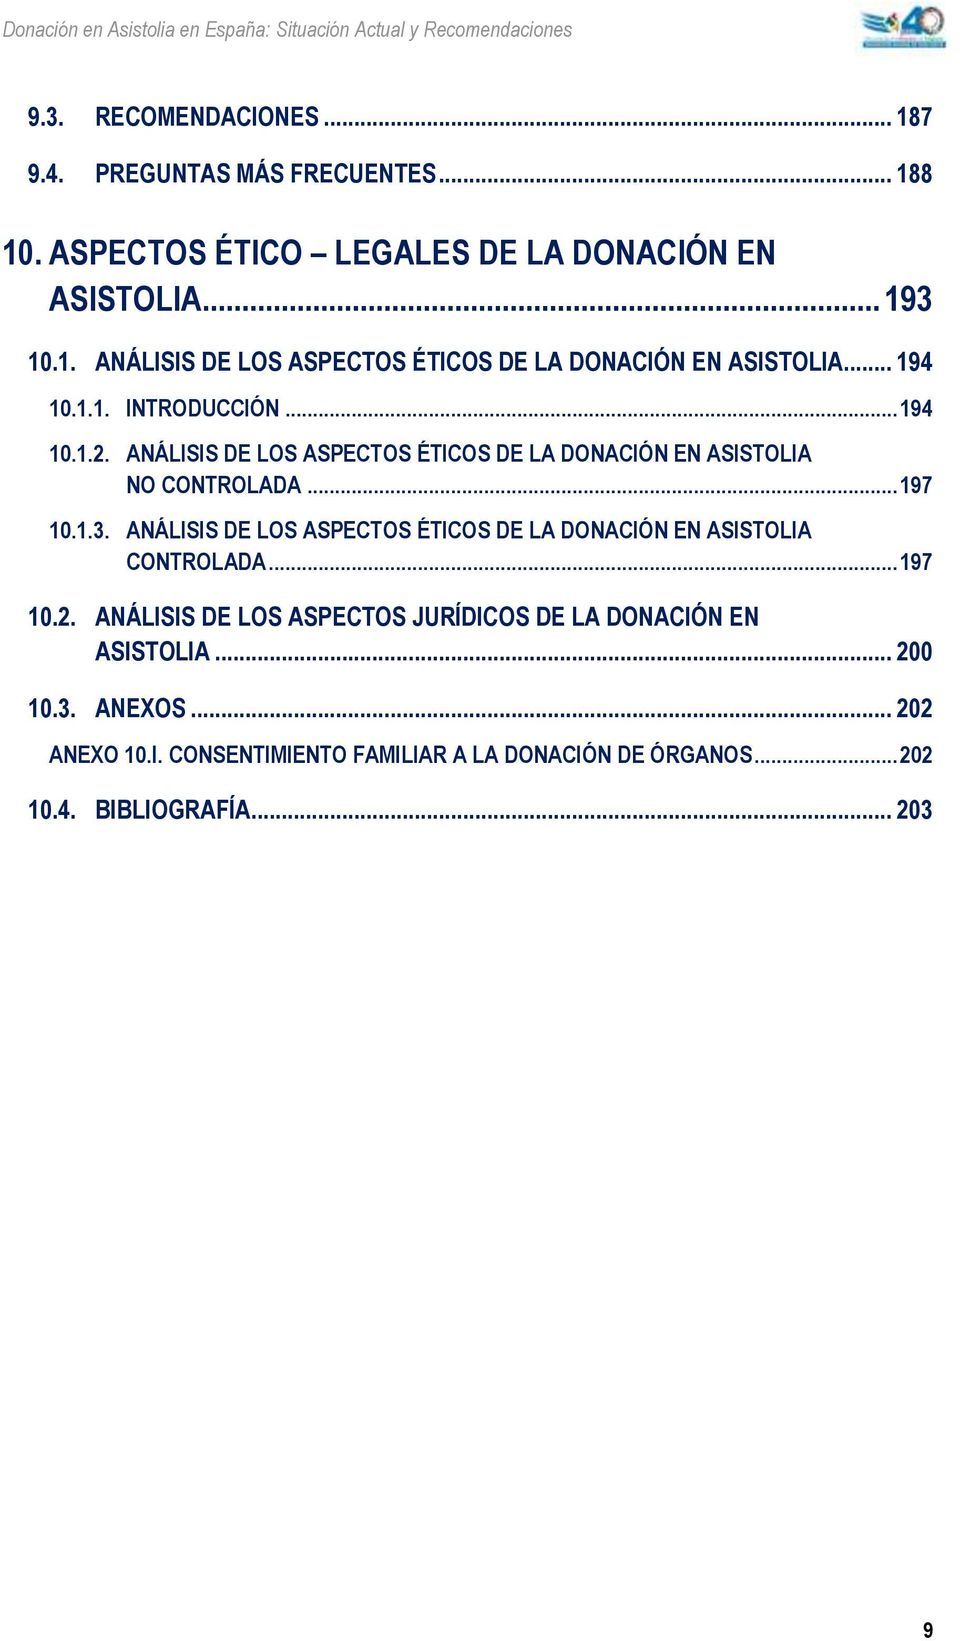 ANÁLISIS DE LOS ASPECTOS ÉTICOS DE LA DONACIÓN EN ASISTOLIA CONTROLADA... 197 10.2. ANÁLISIS DE LOS ASPECTOS JURÍDICOS DE LA DONACIÓN EN ASISTOLIA.